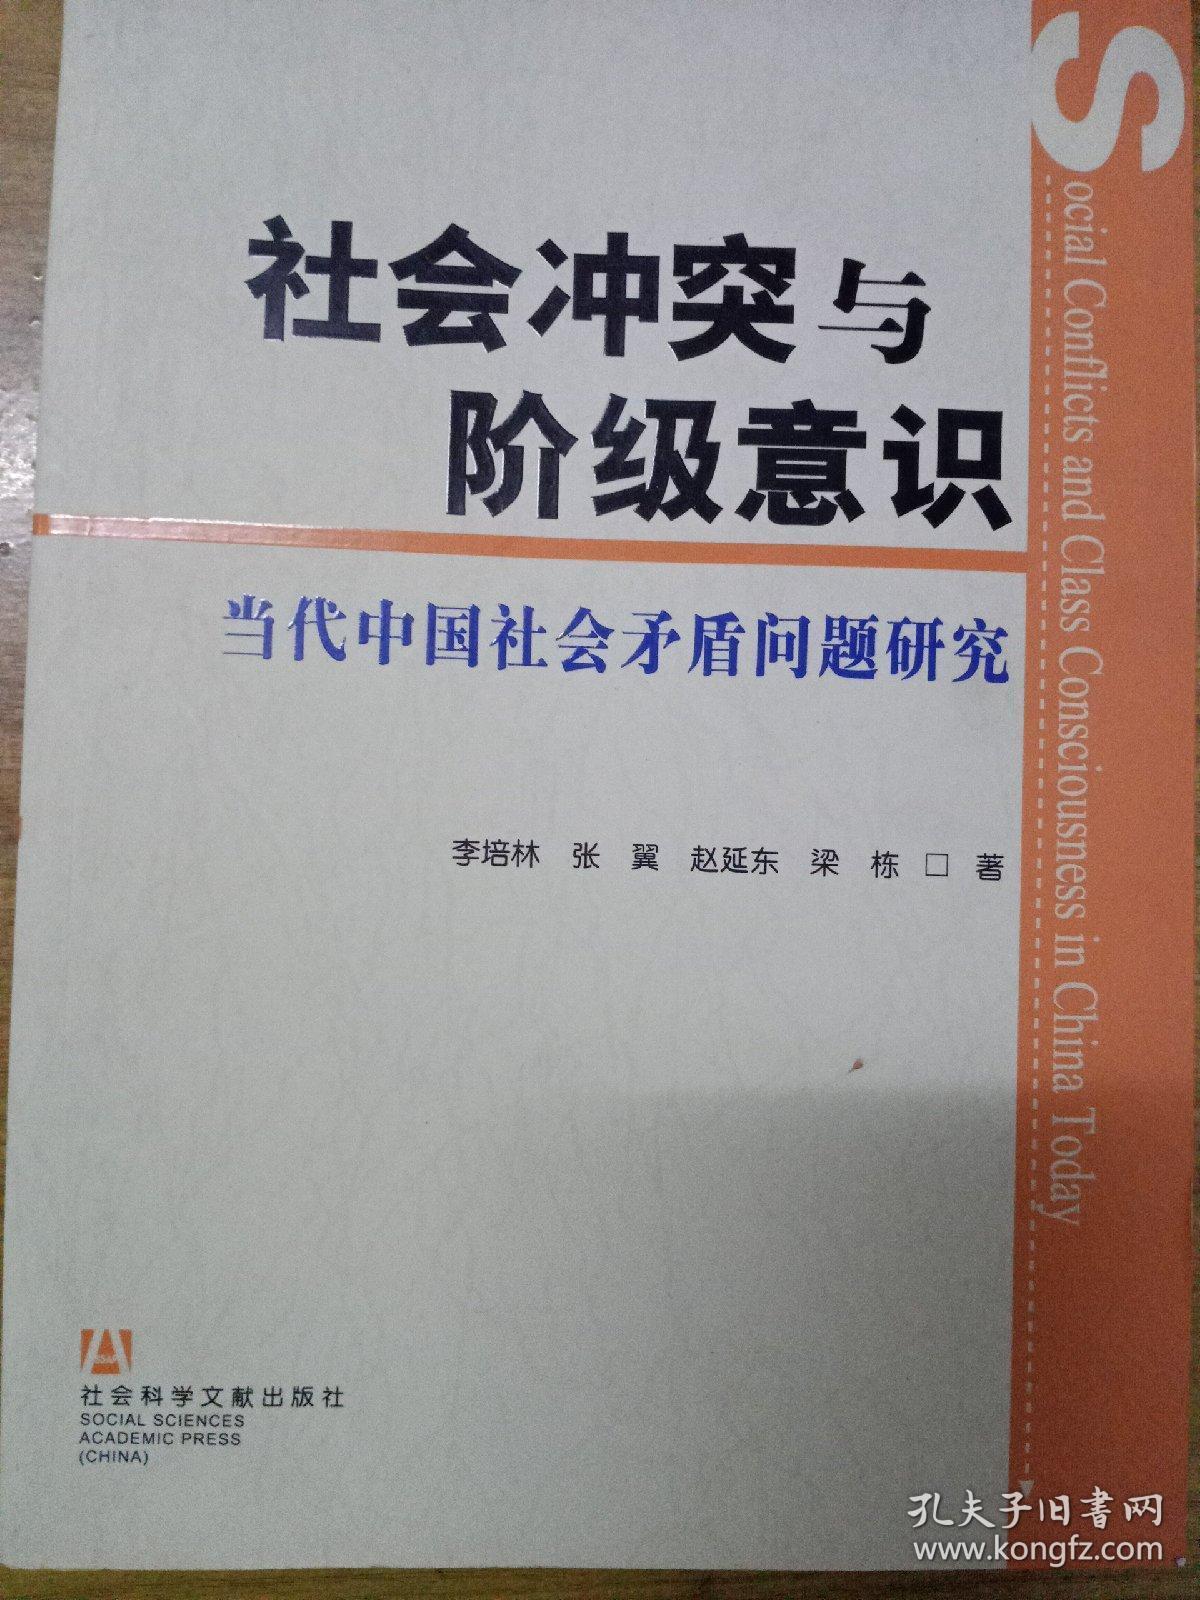 社会冲突与阶级意识:当代中国社会矛盾问题研究.